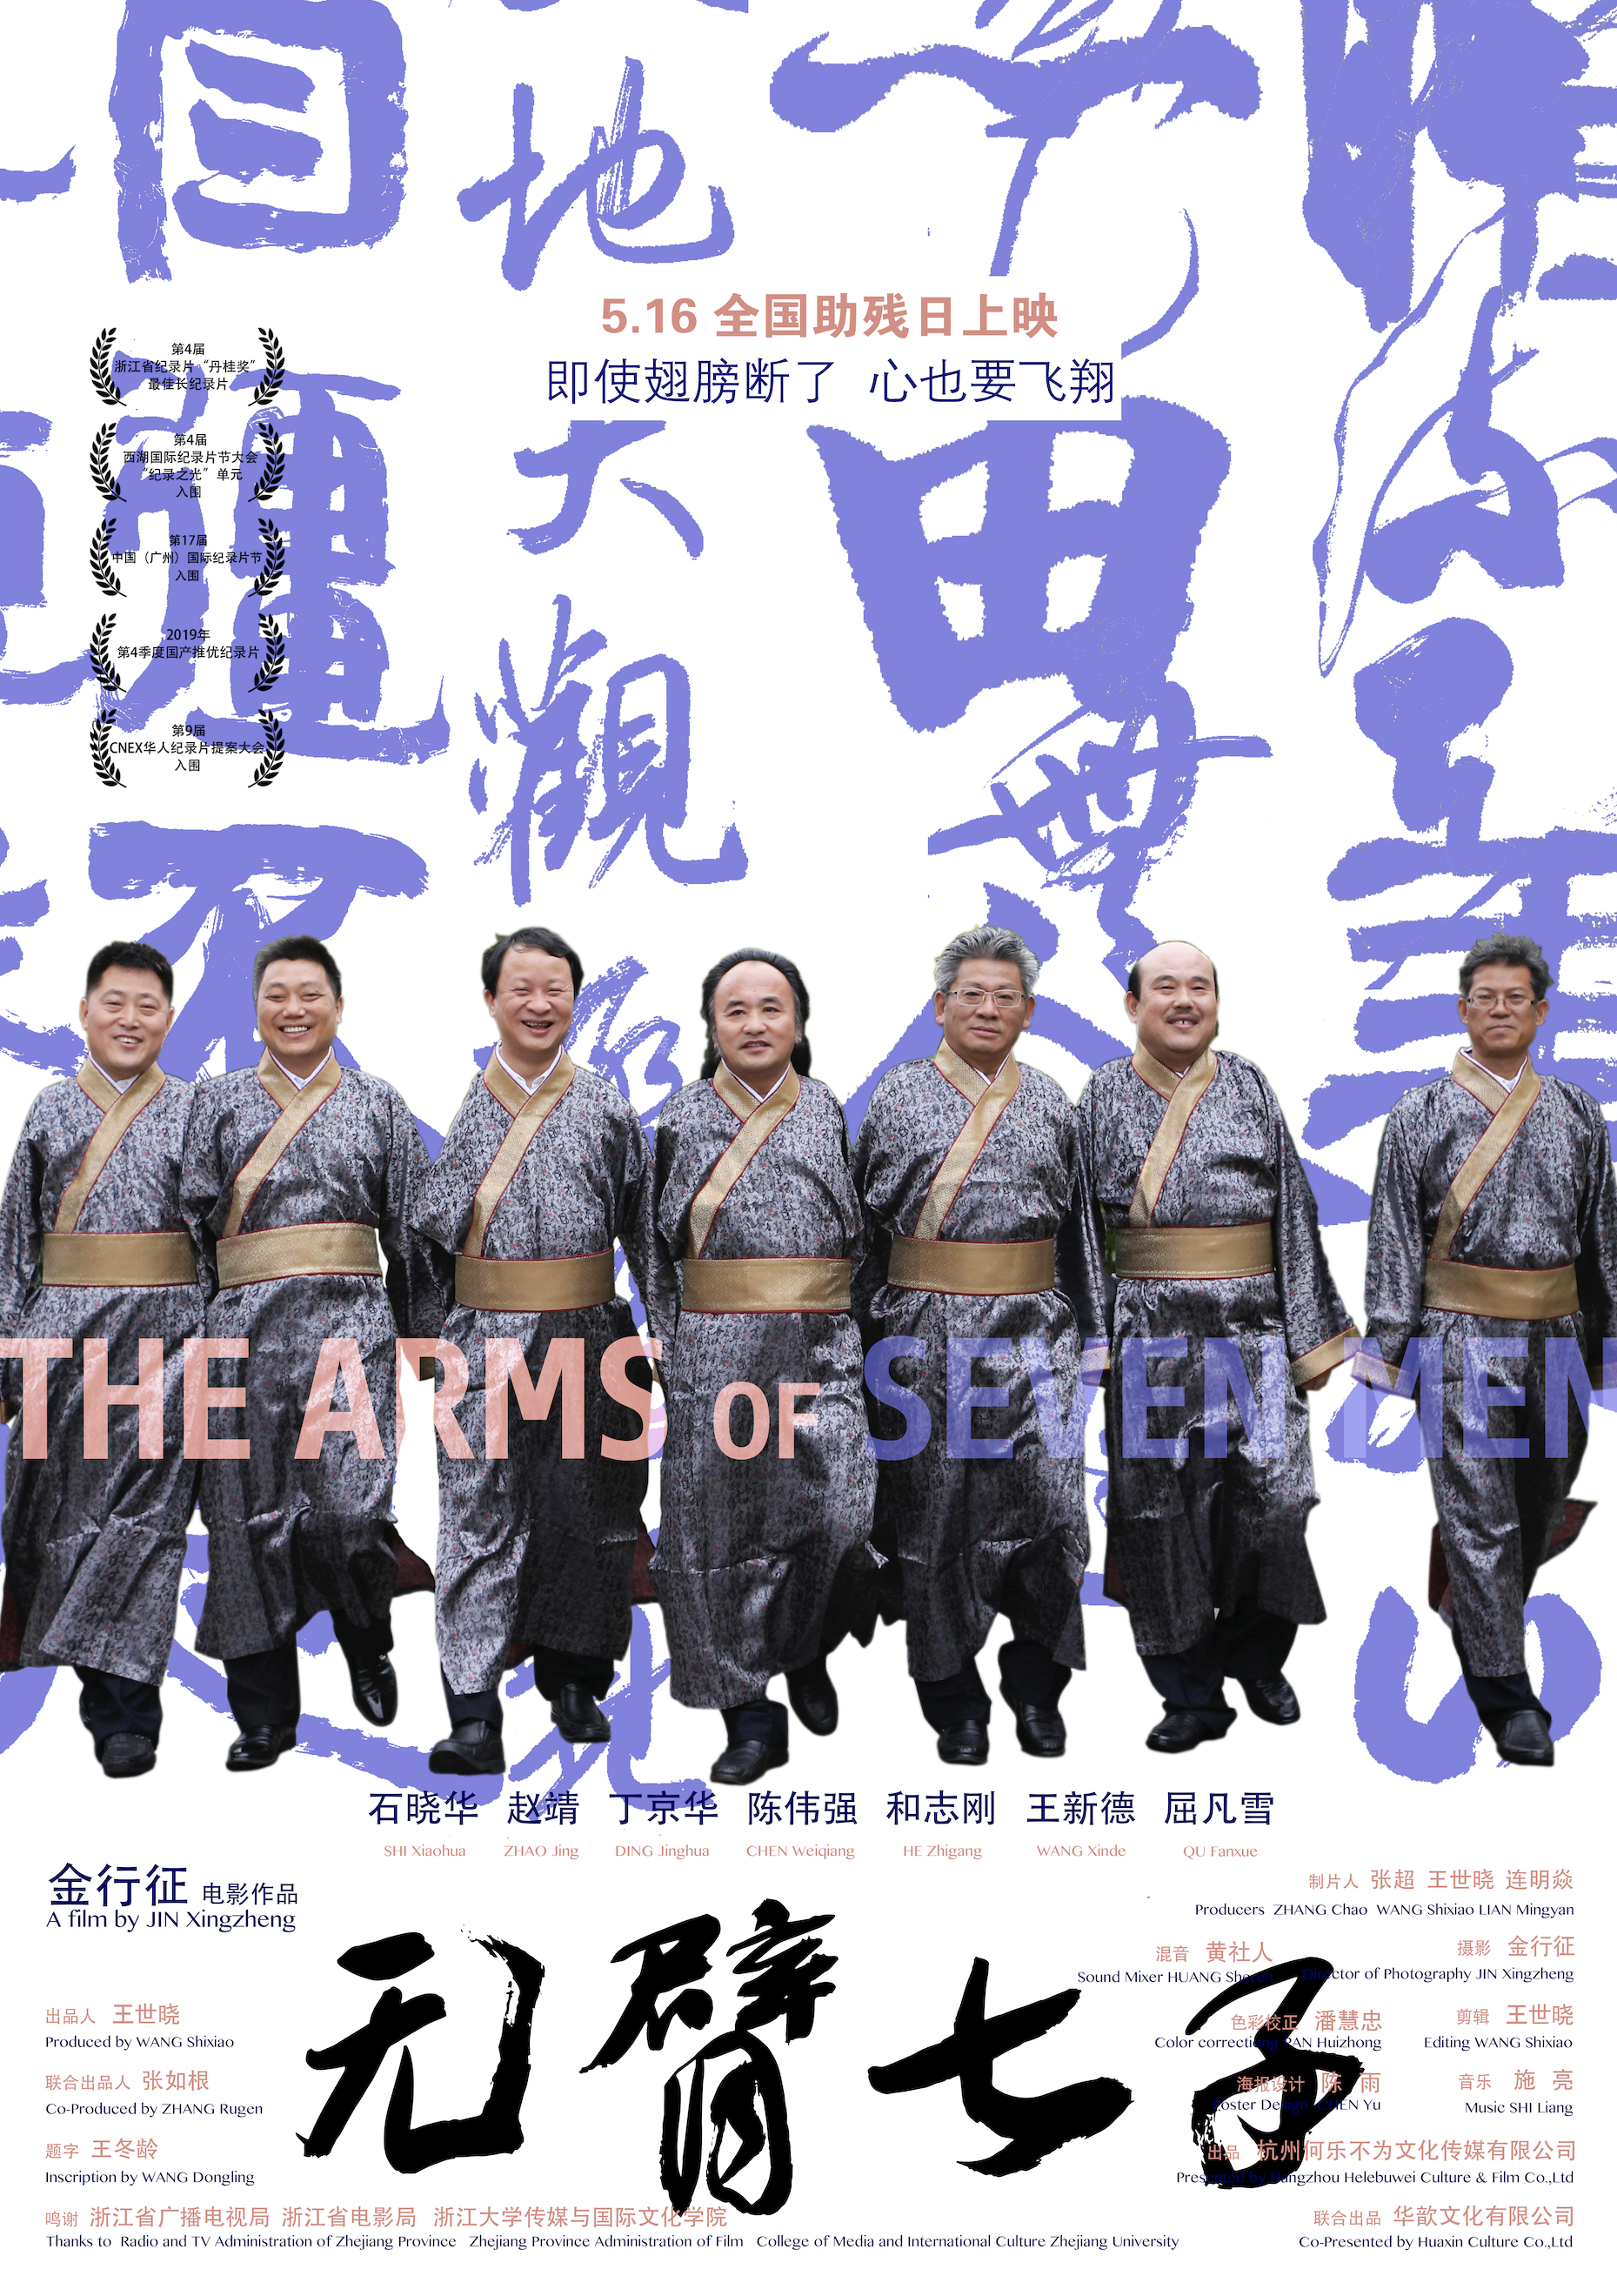 无臂七子 - THE ARMS OF SEVEN MEN